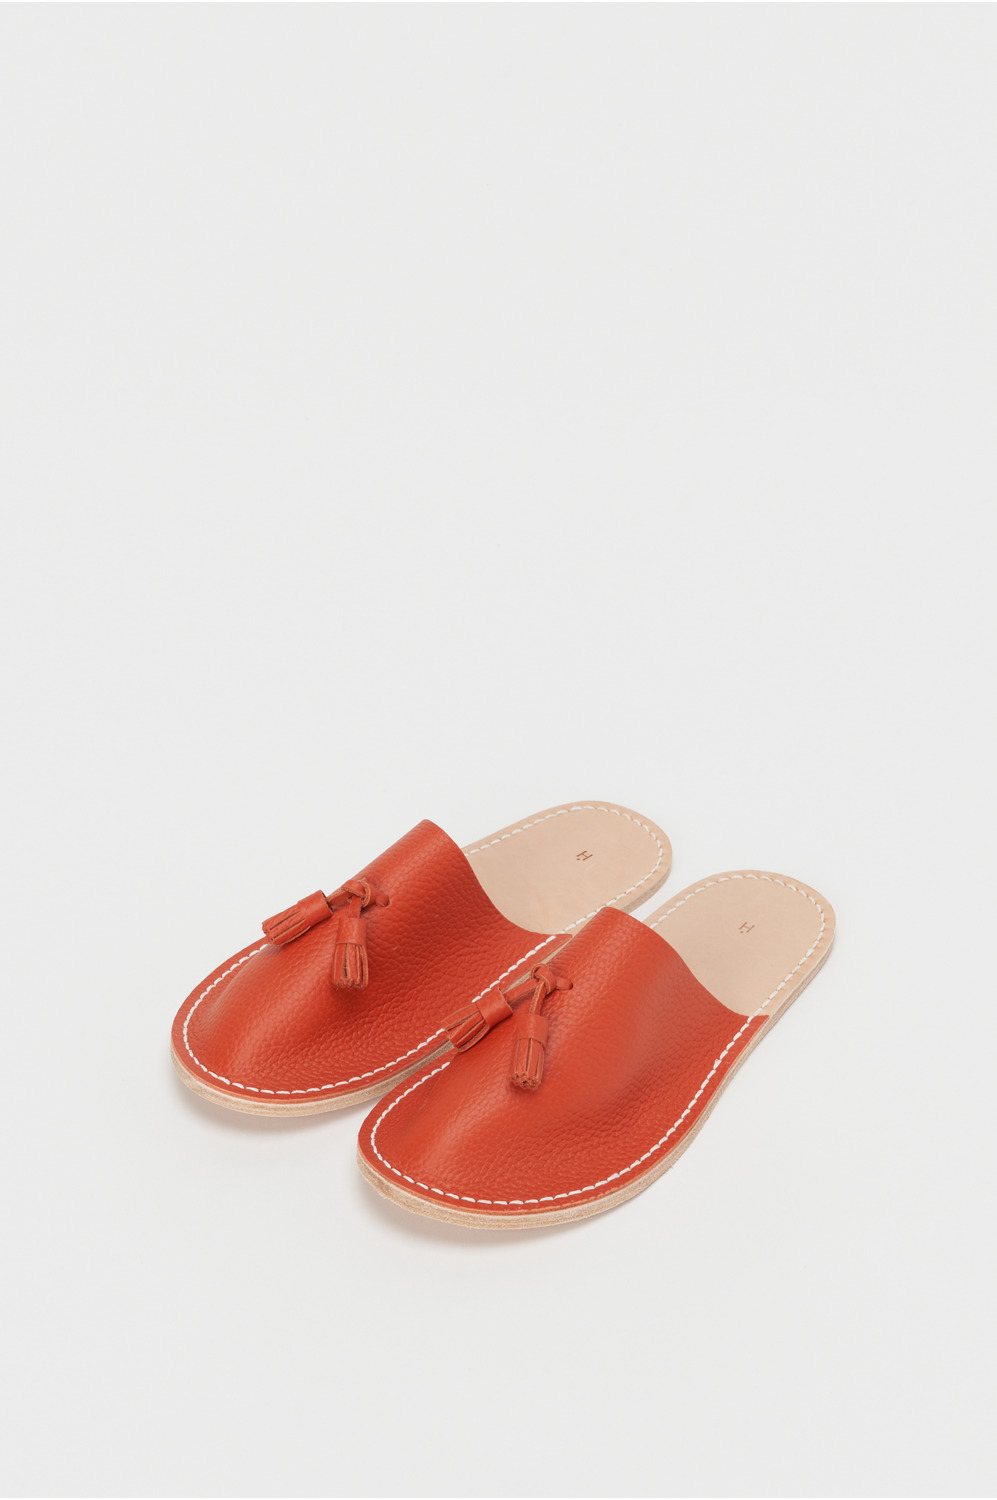 leather slipper 詳細画像 copper orange 1